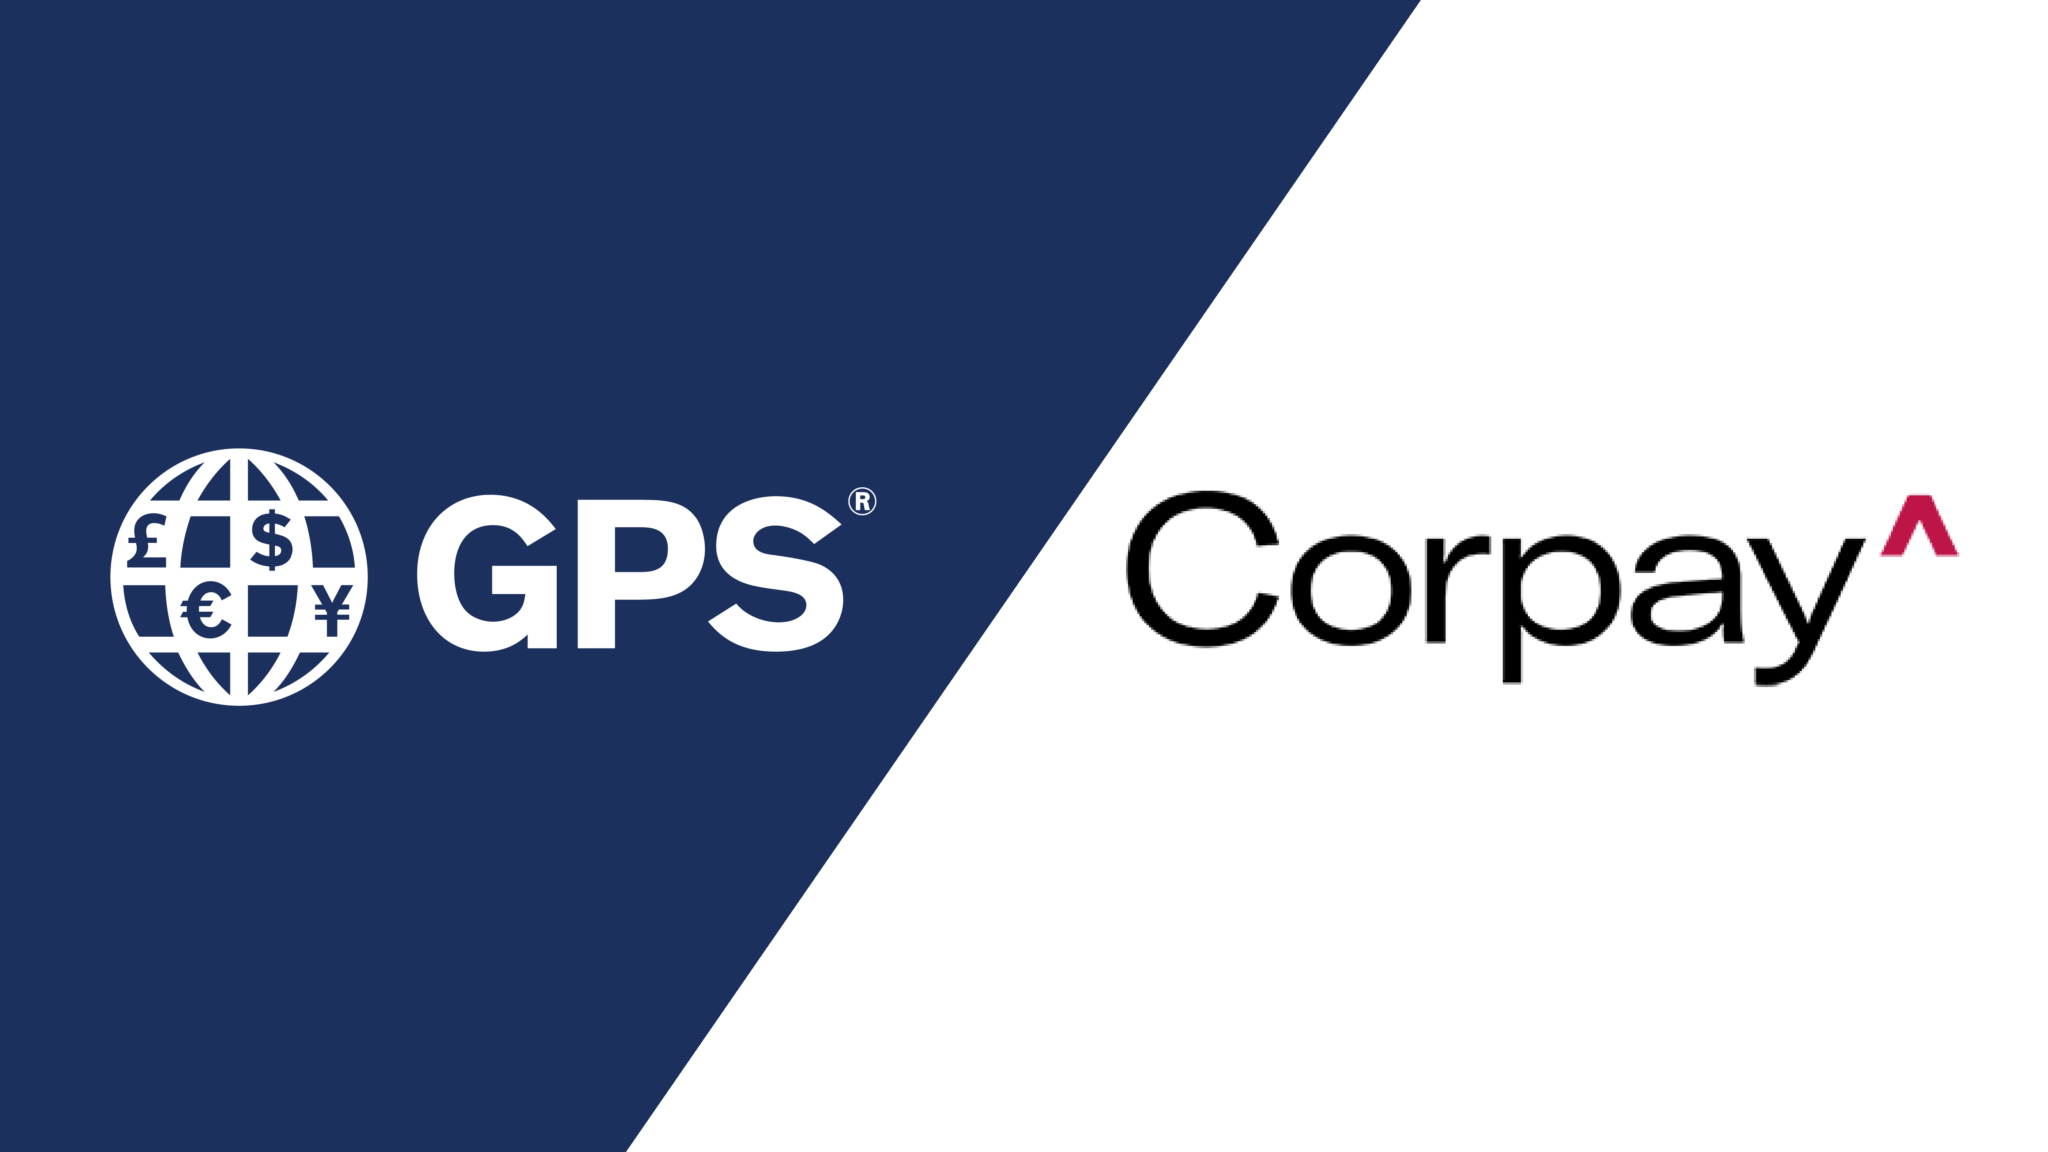 GPS-Corpay-1-2048x1152